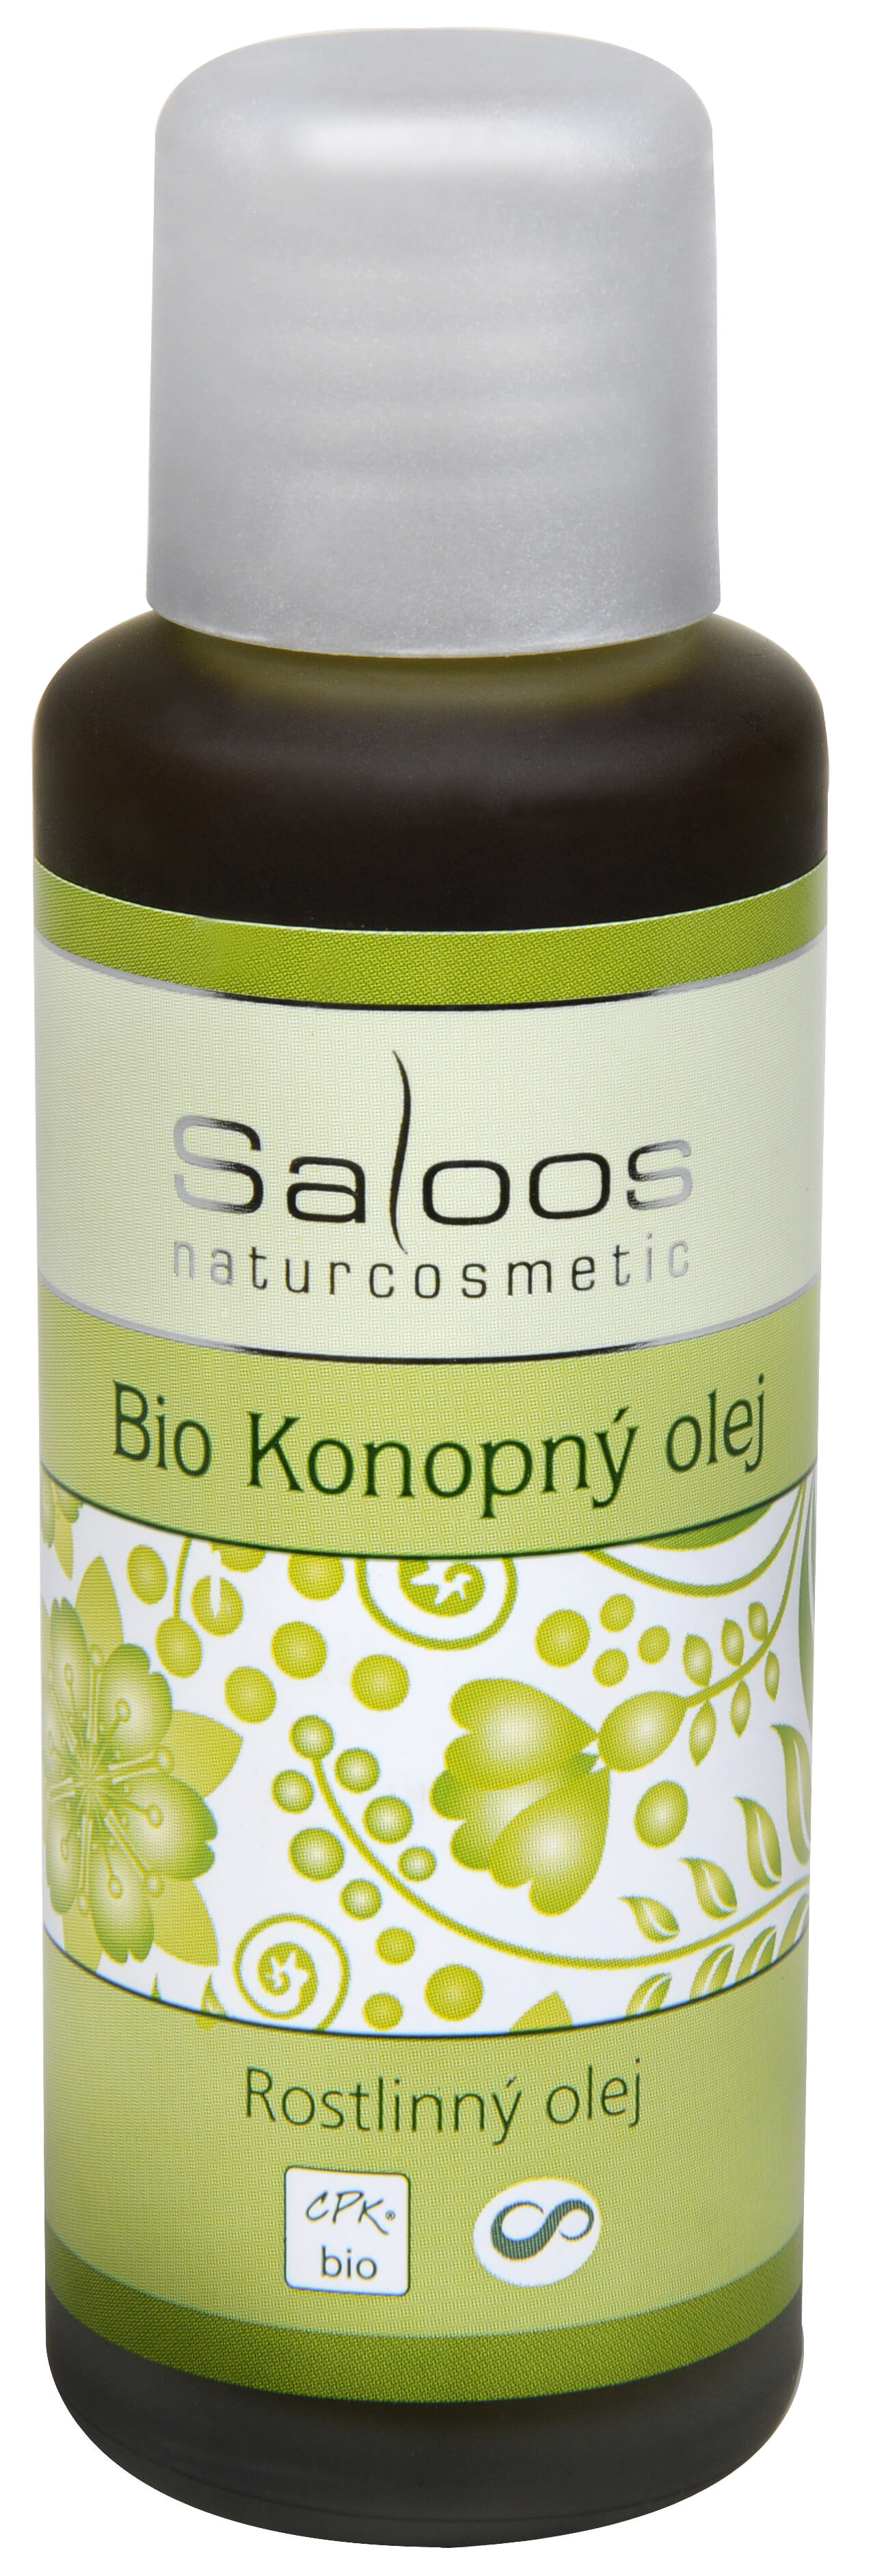 Zobrazit detail výrobku Saloos Bio Konopný olej lisovaný za studena 50 ml + 2 měsíce na vrácení zboží